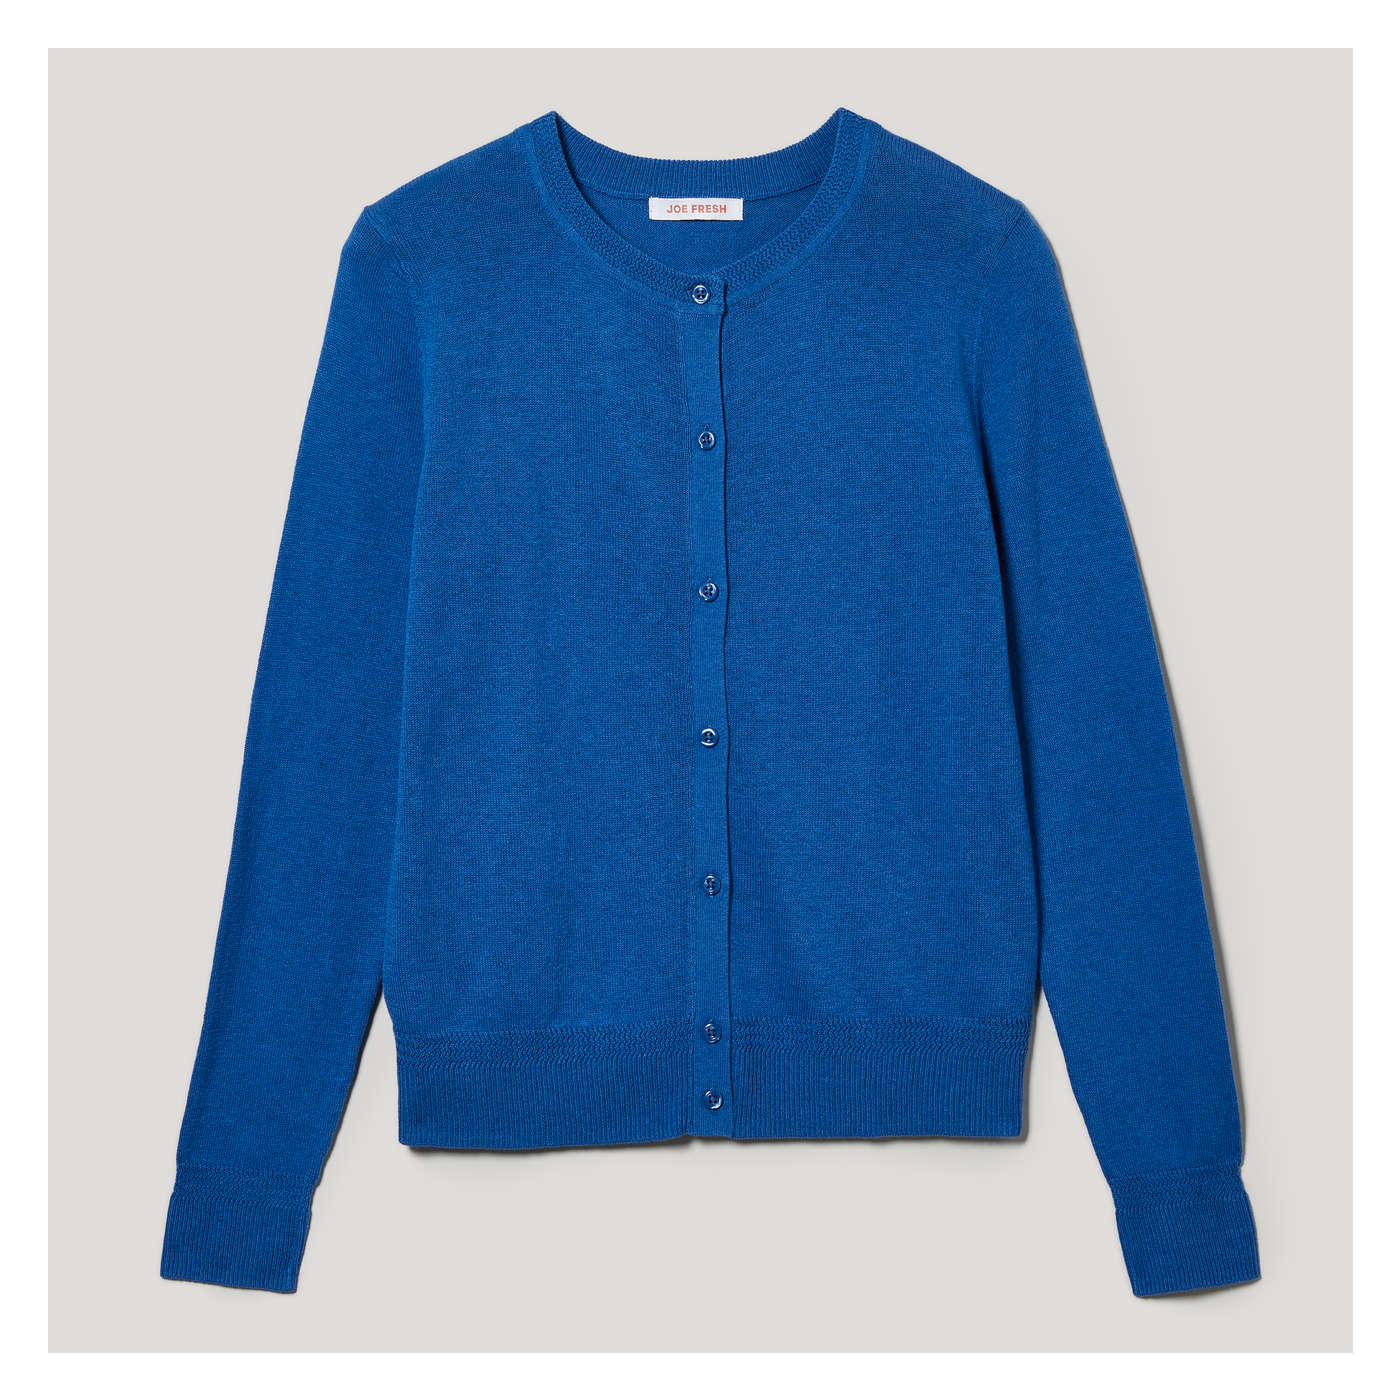 Josephine Chaus 100% Cotton Color Block Blue Cardigan Size XL - 72